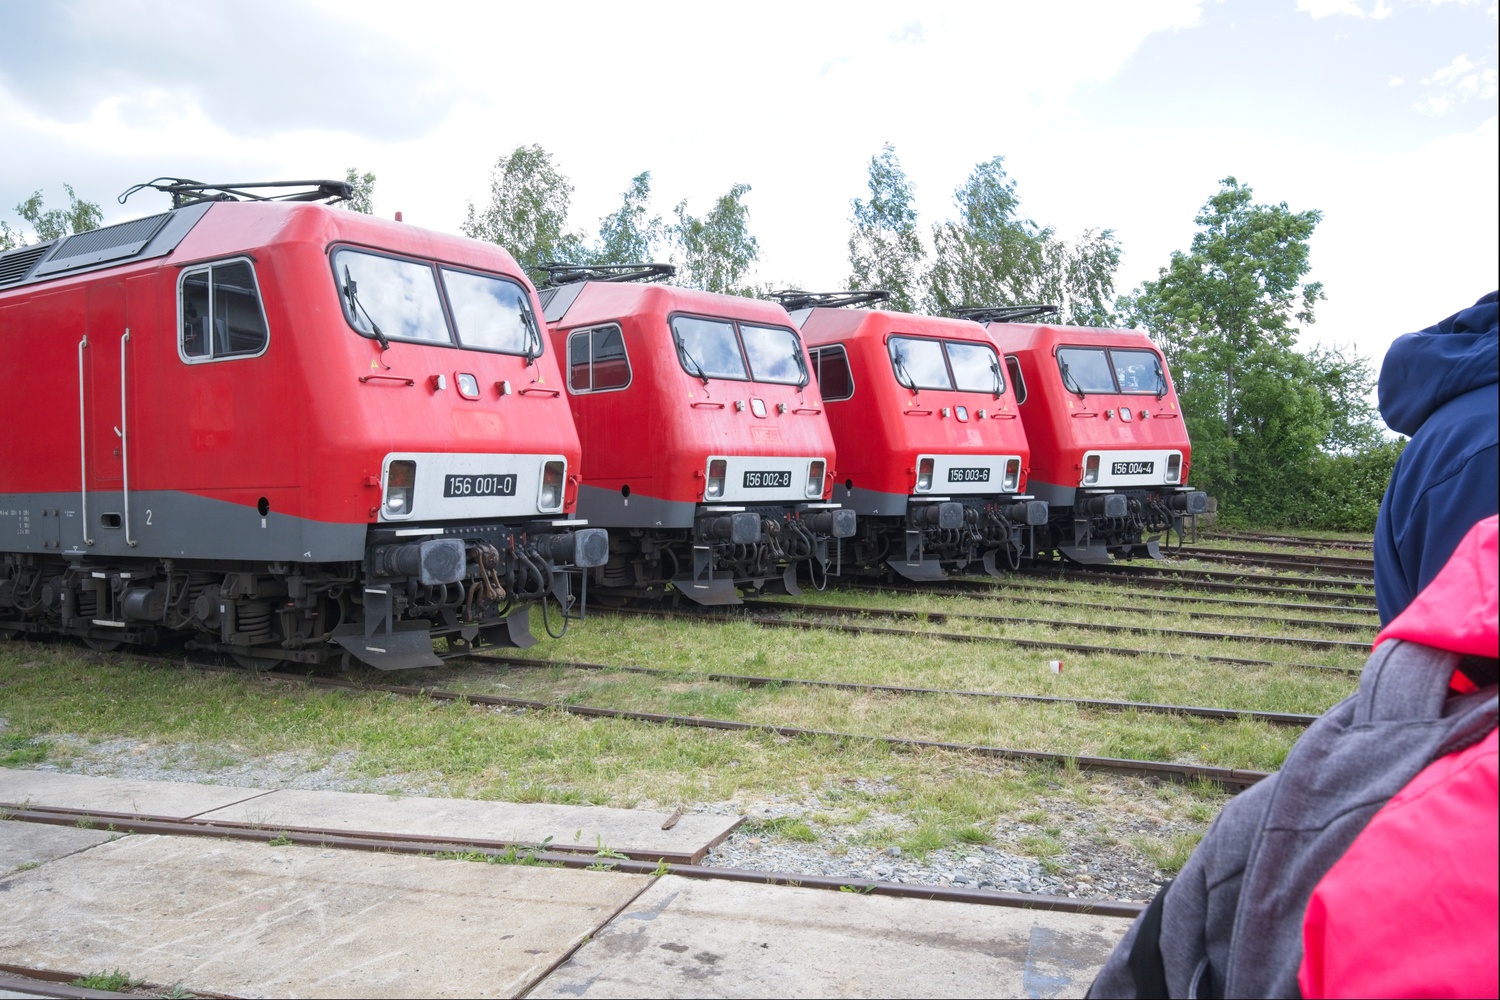 Rechts vom vorhergehenden Bild wird die Entwicklung ergänzt durch Vier Loks der Baureihe 252 / 156, welche die letzten in der DDR entwickelte E-Lokbaureihe war.